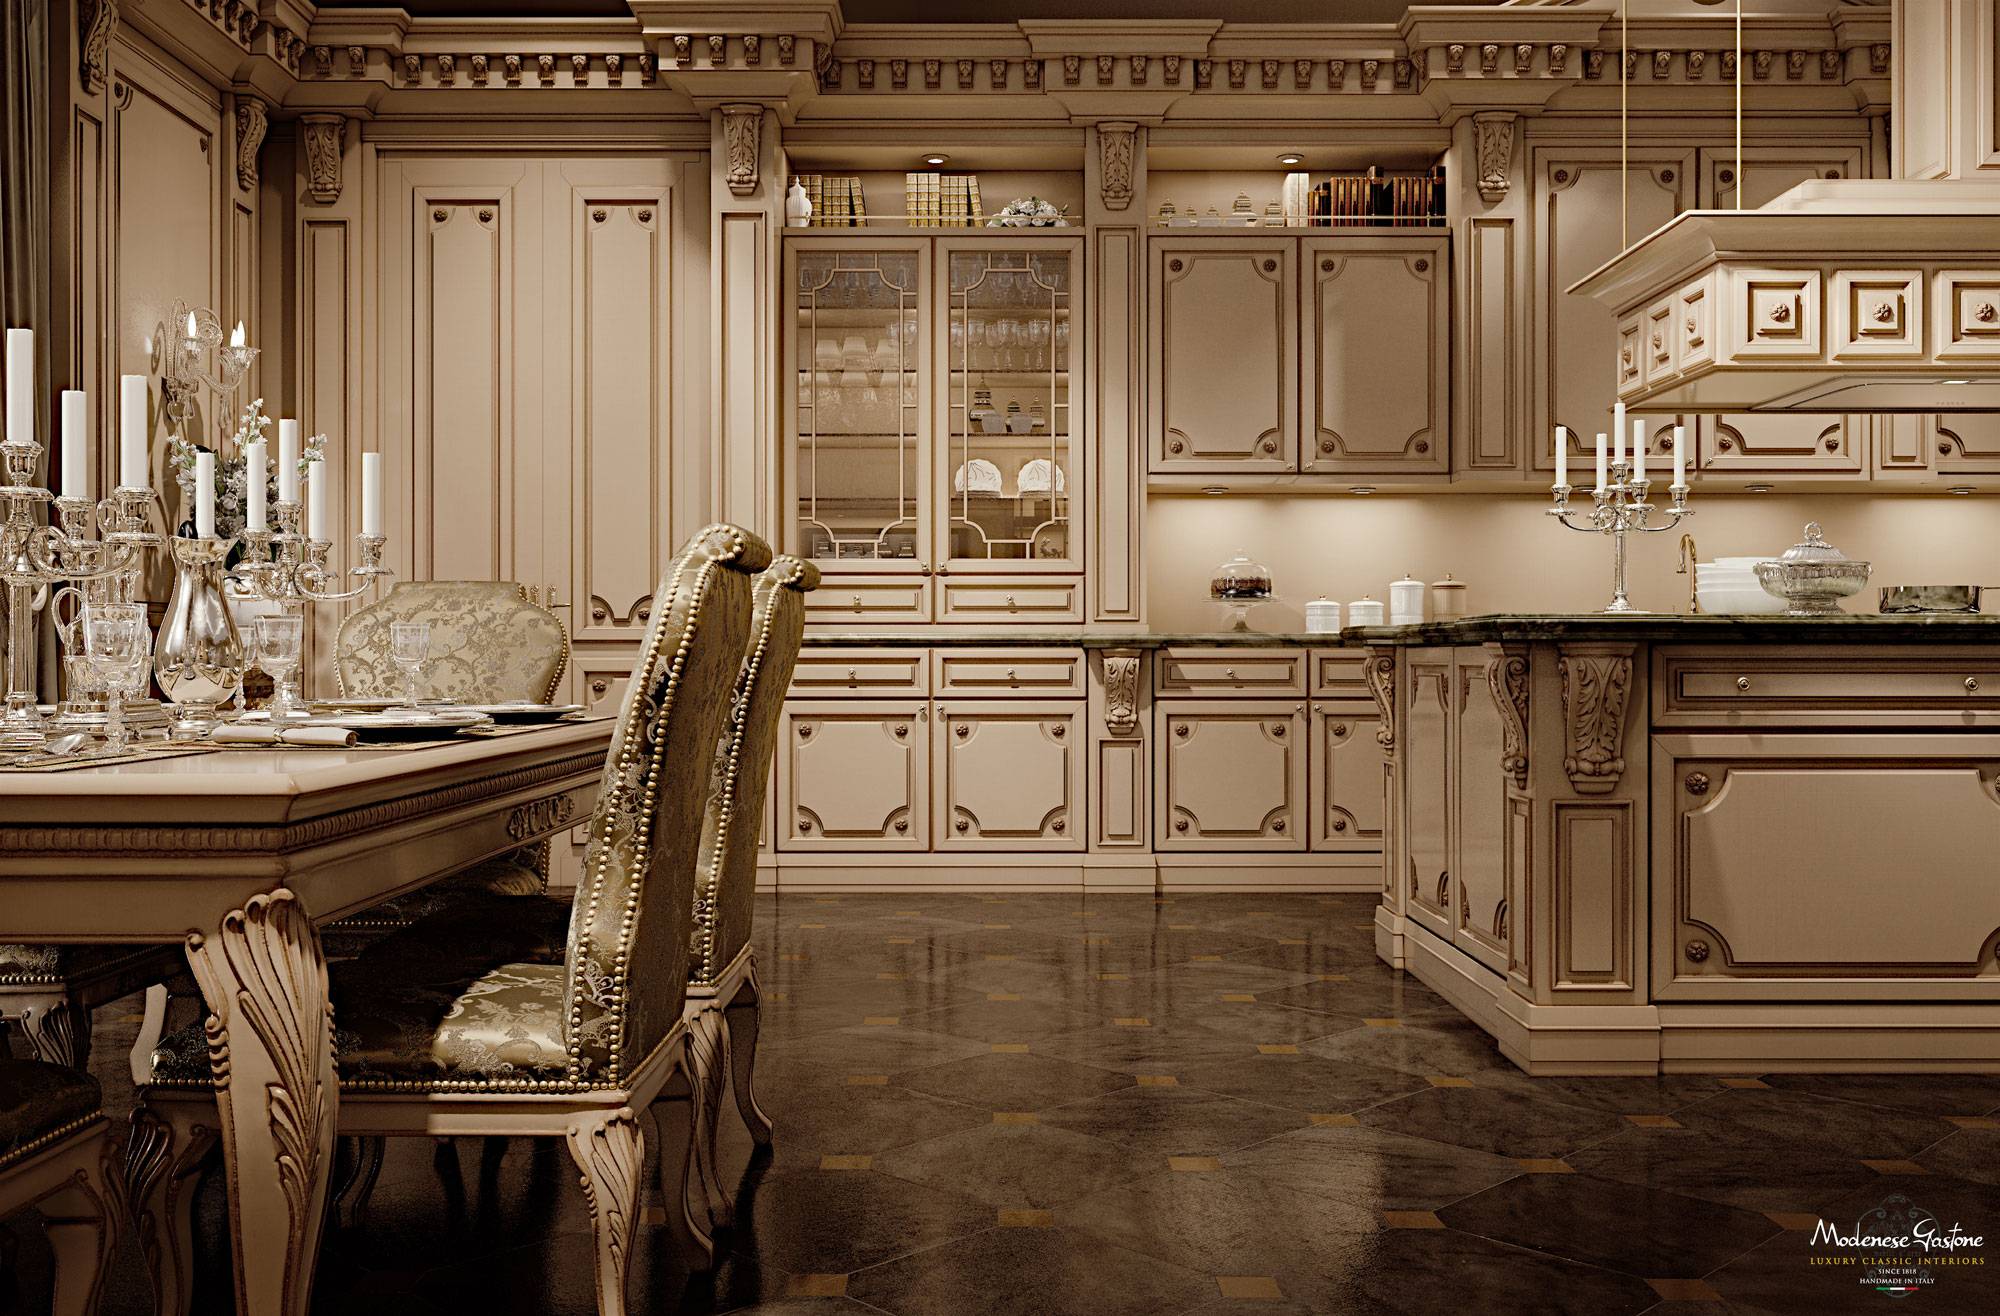 Красивые кухни: фото интерьеров шикарных кухонь в современном стиле